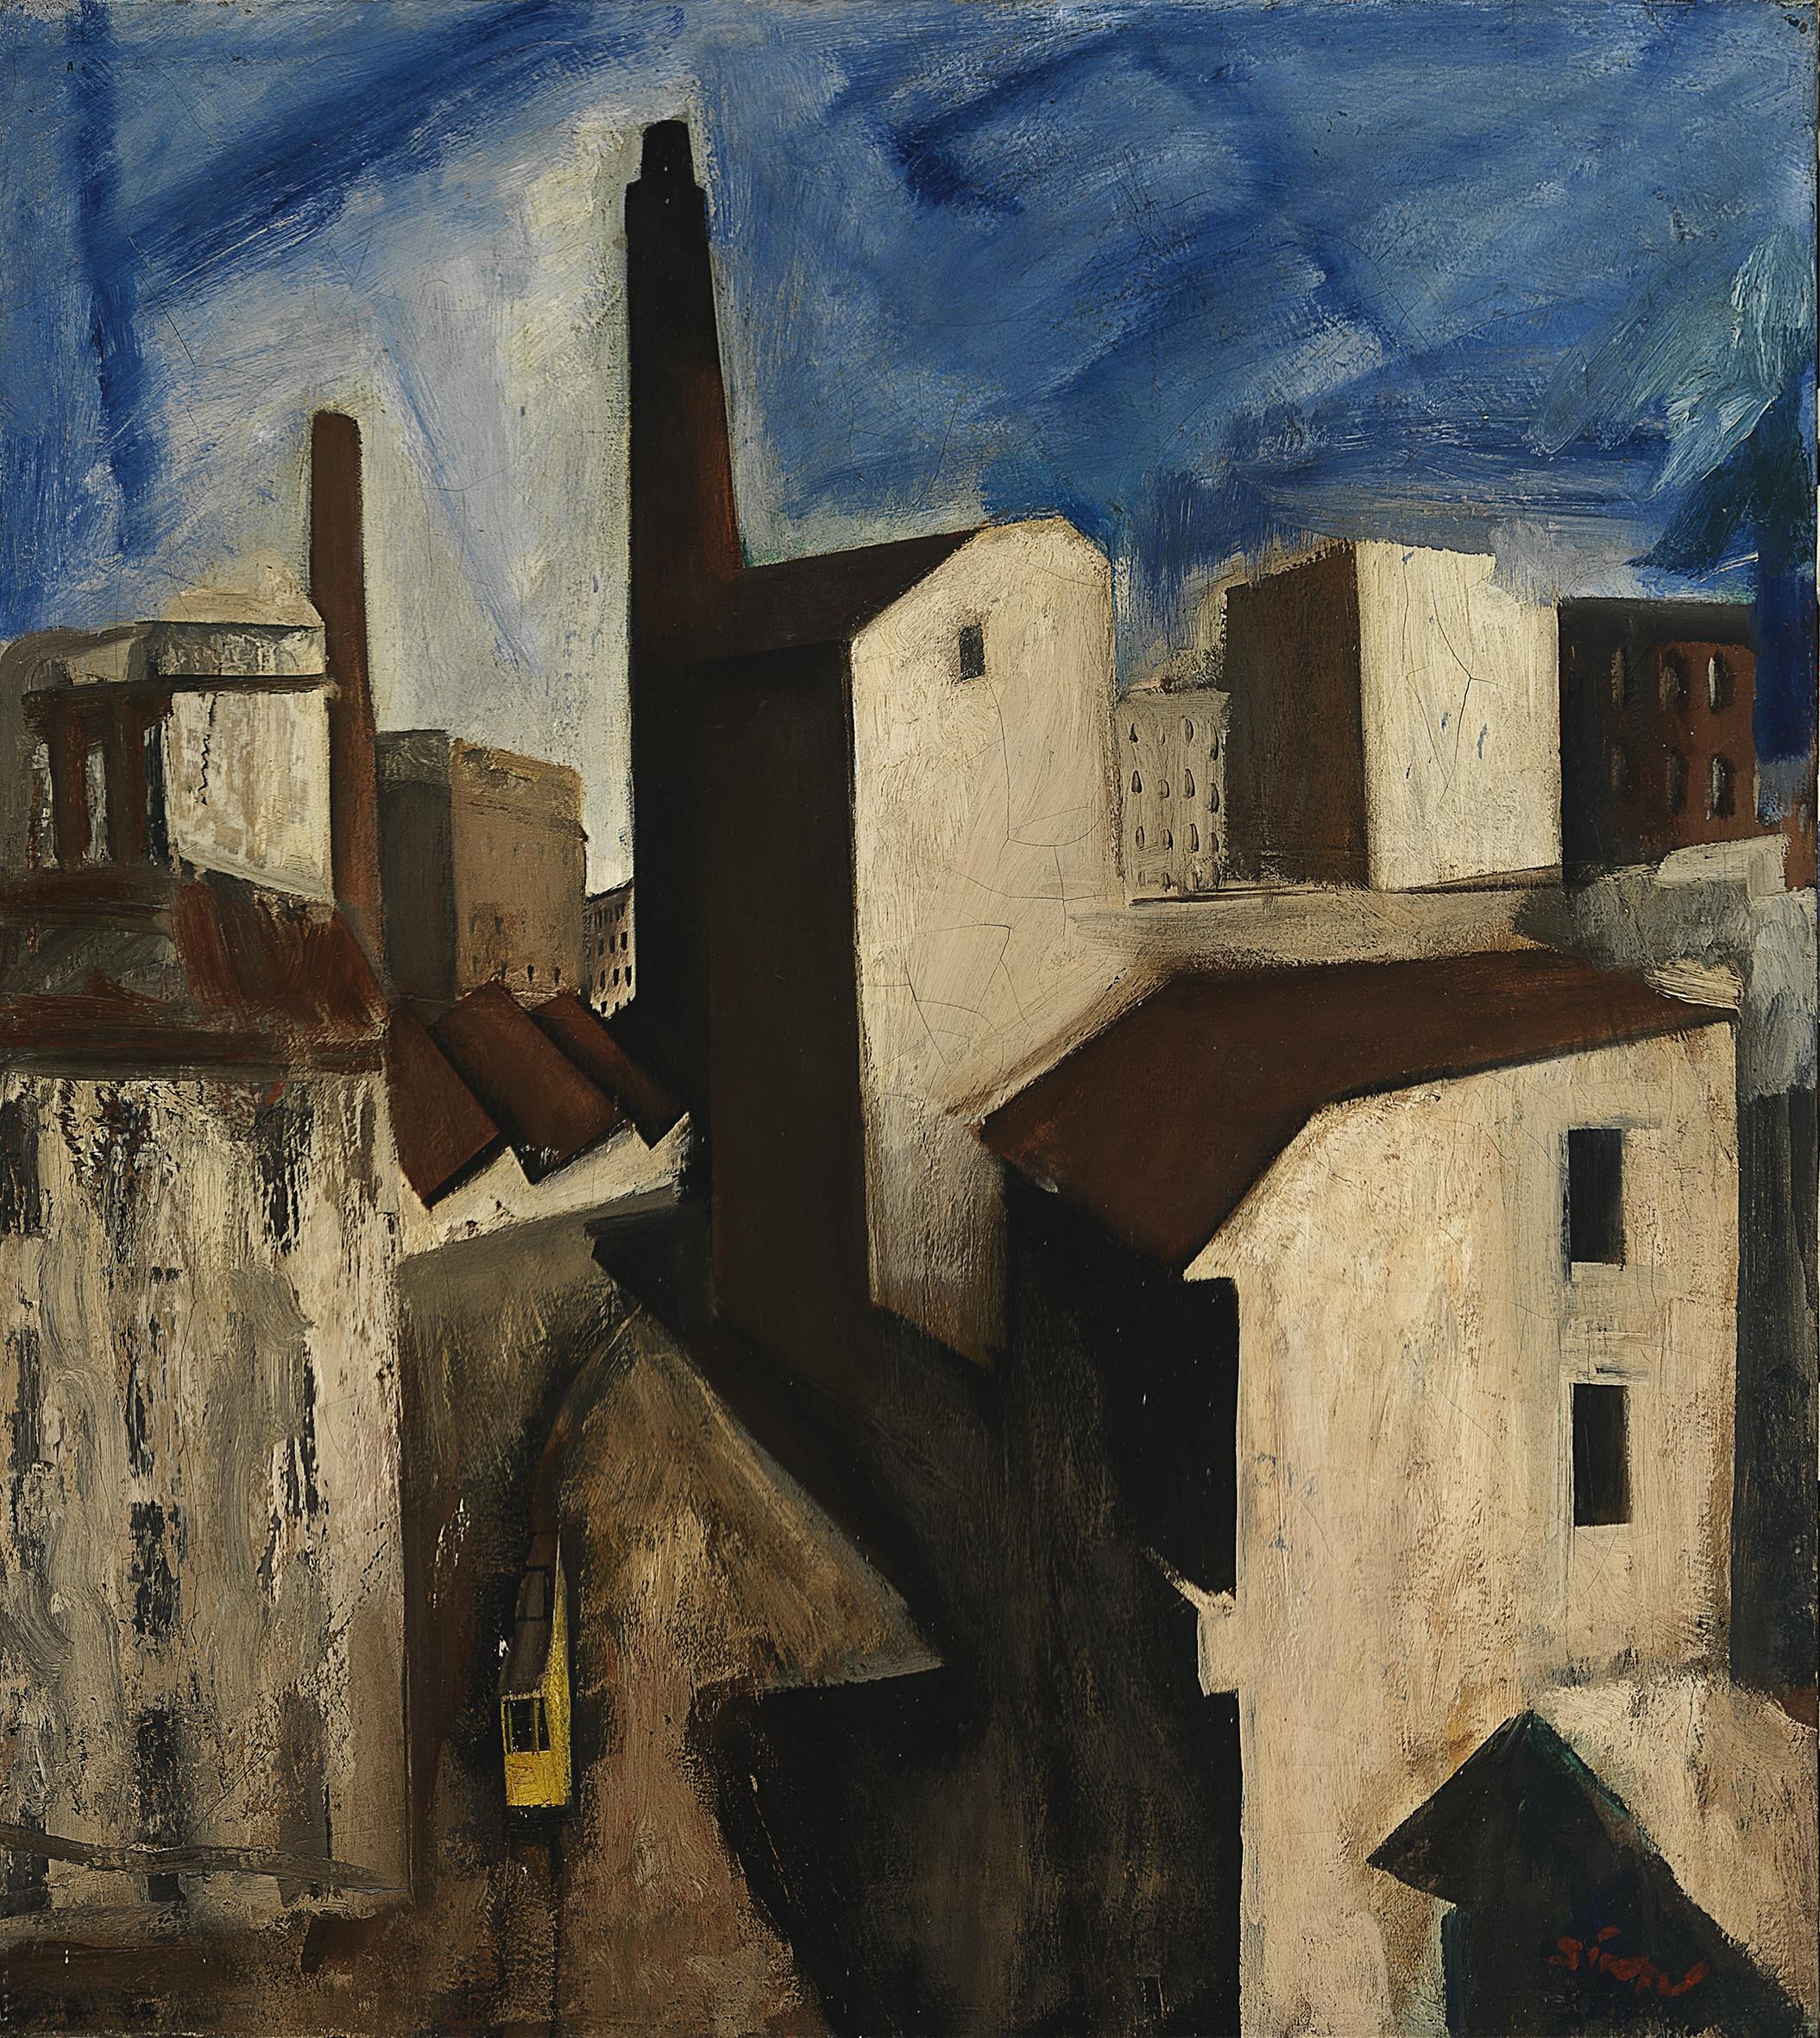 Mario Sironi: Paesaggio urbano, 1925-28, olio su tela, 80,5 x 70,5 cm, Milano, Museo del Novecento © Mario Sironi, by SIAE 2021 